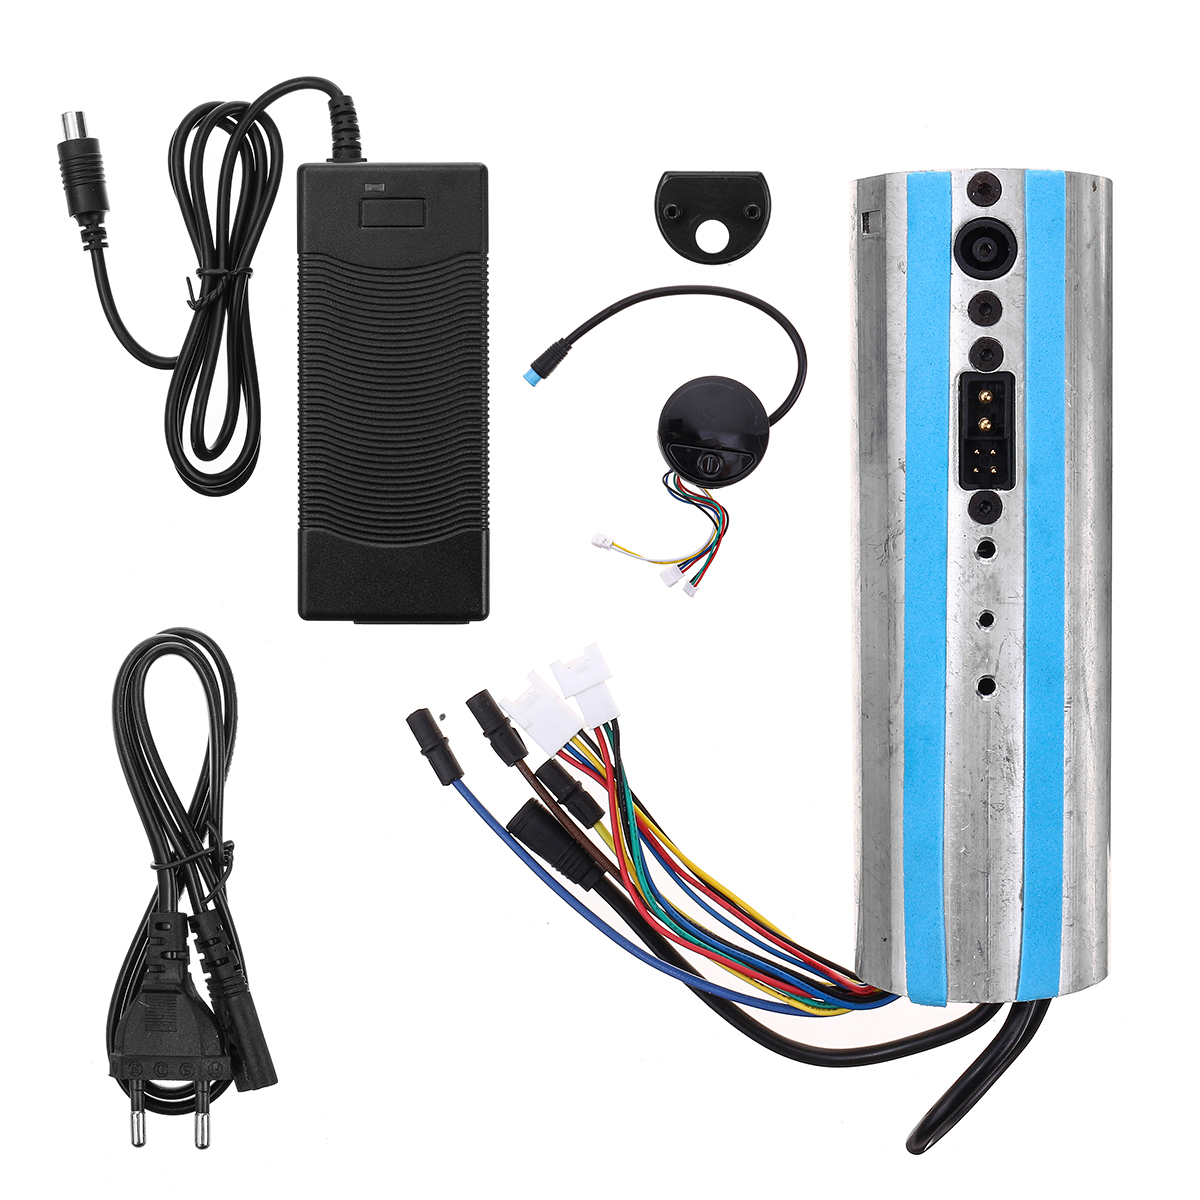 

Активированное зарядное устройство панели контроллера Bluetooth для Ninebot ES1 ES2 ES3 ES4 Scooter